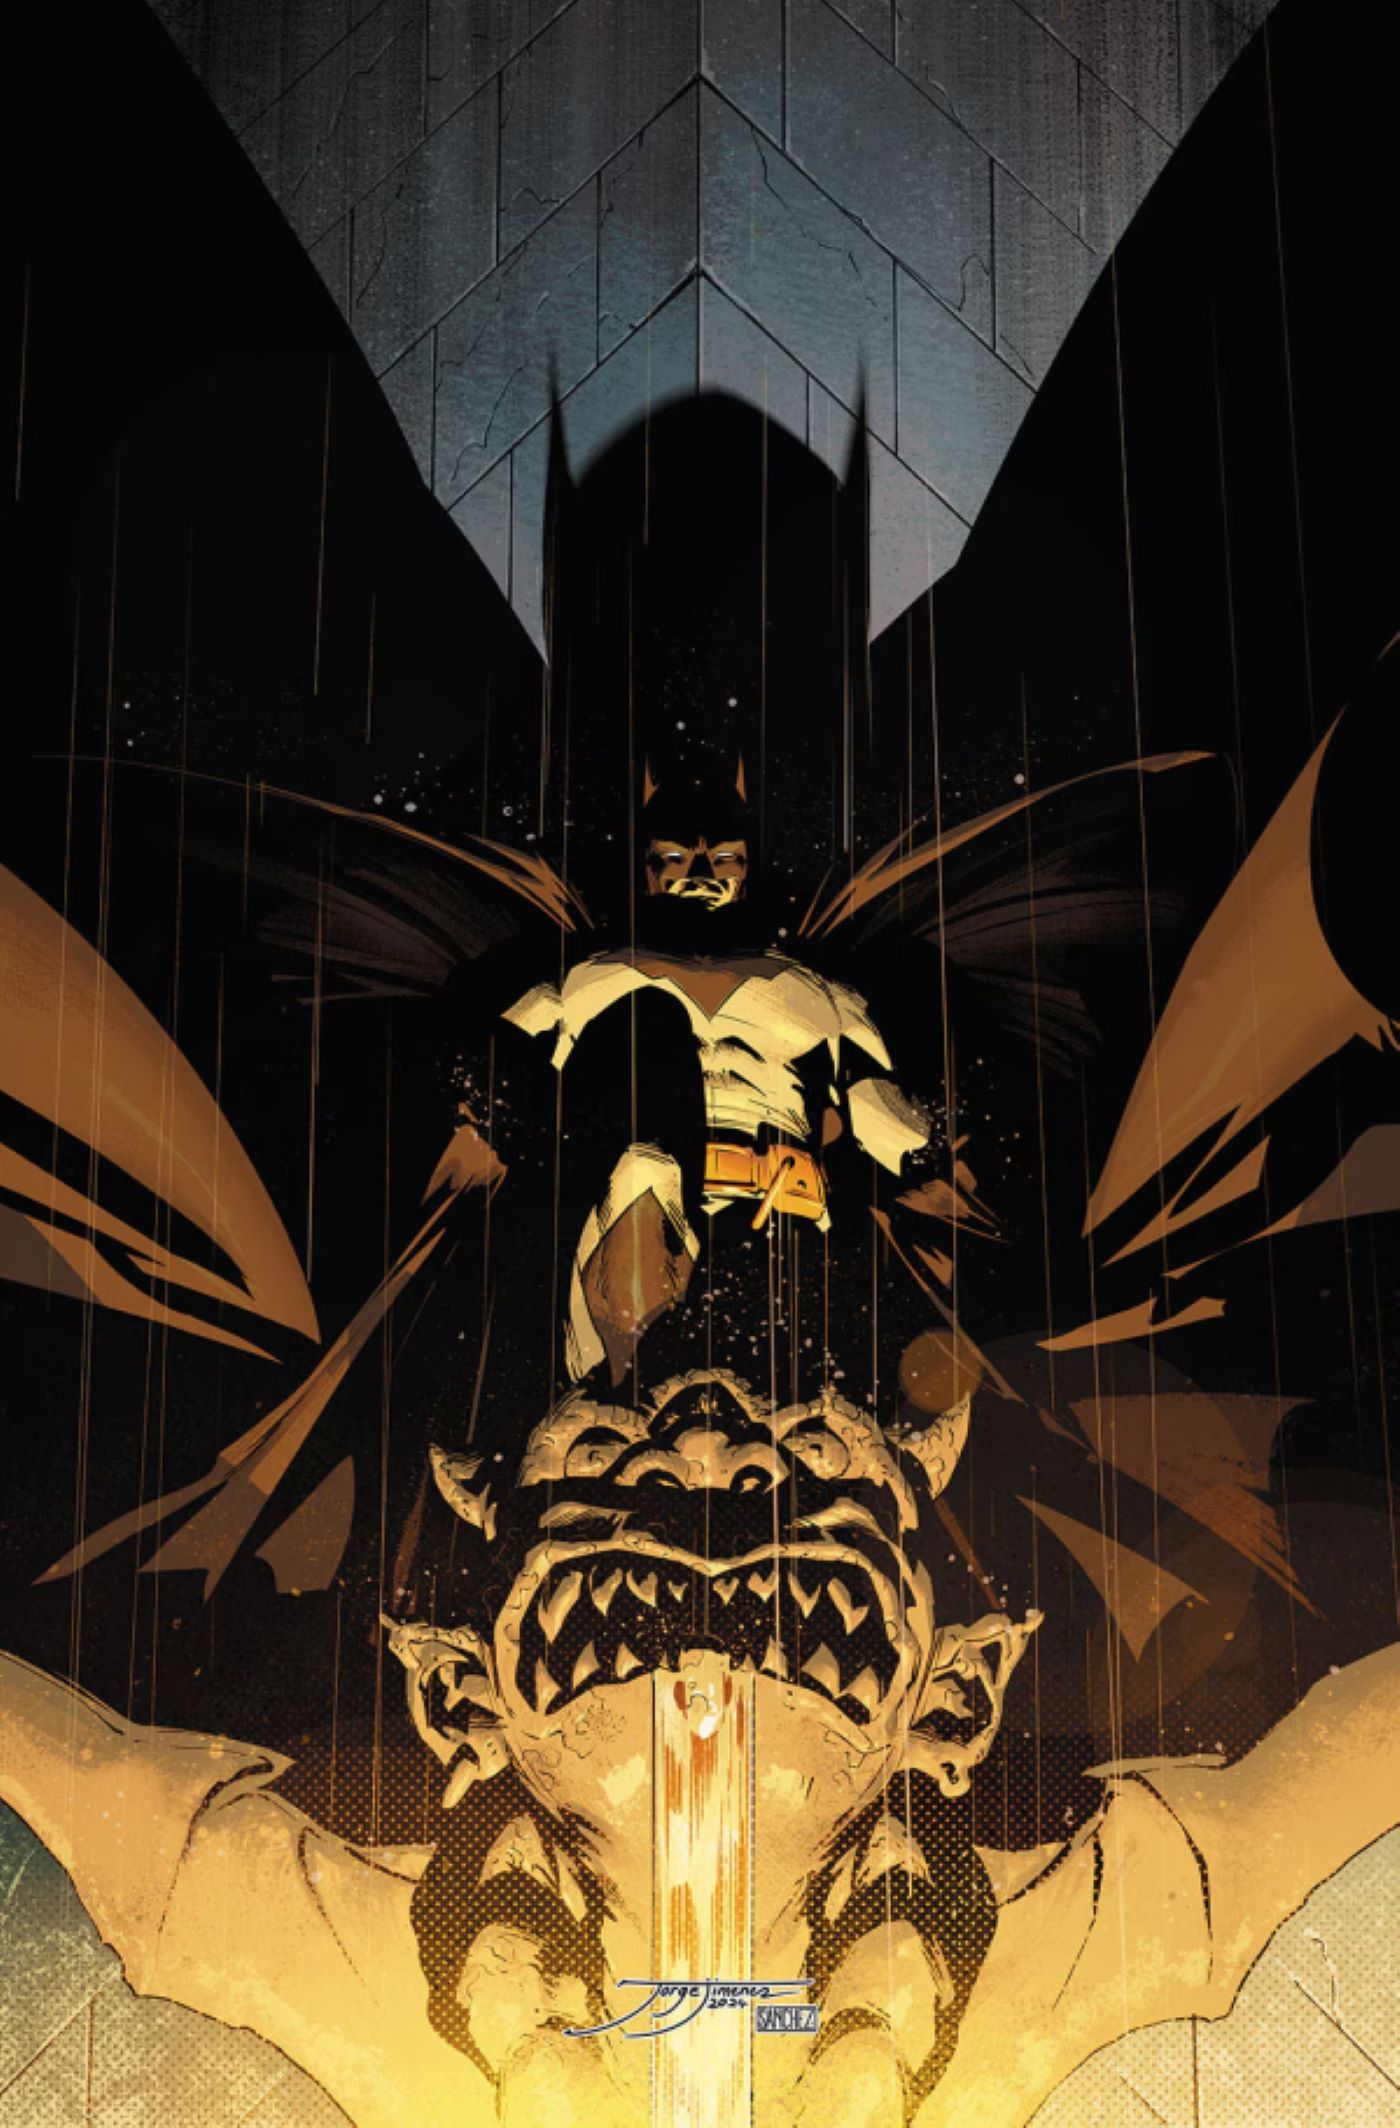 Batman #150 featuring Bruce Wayne